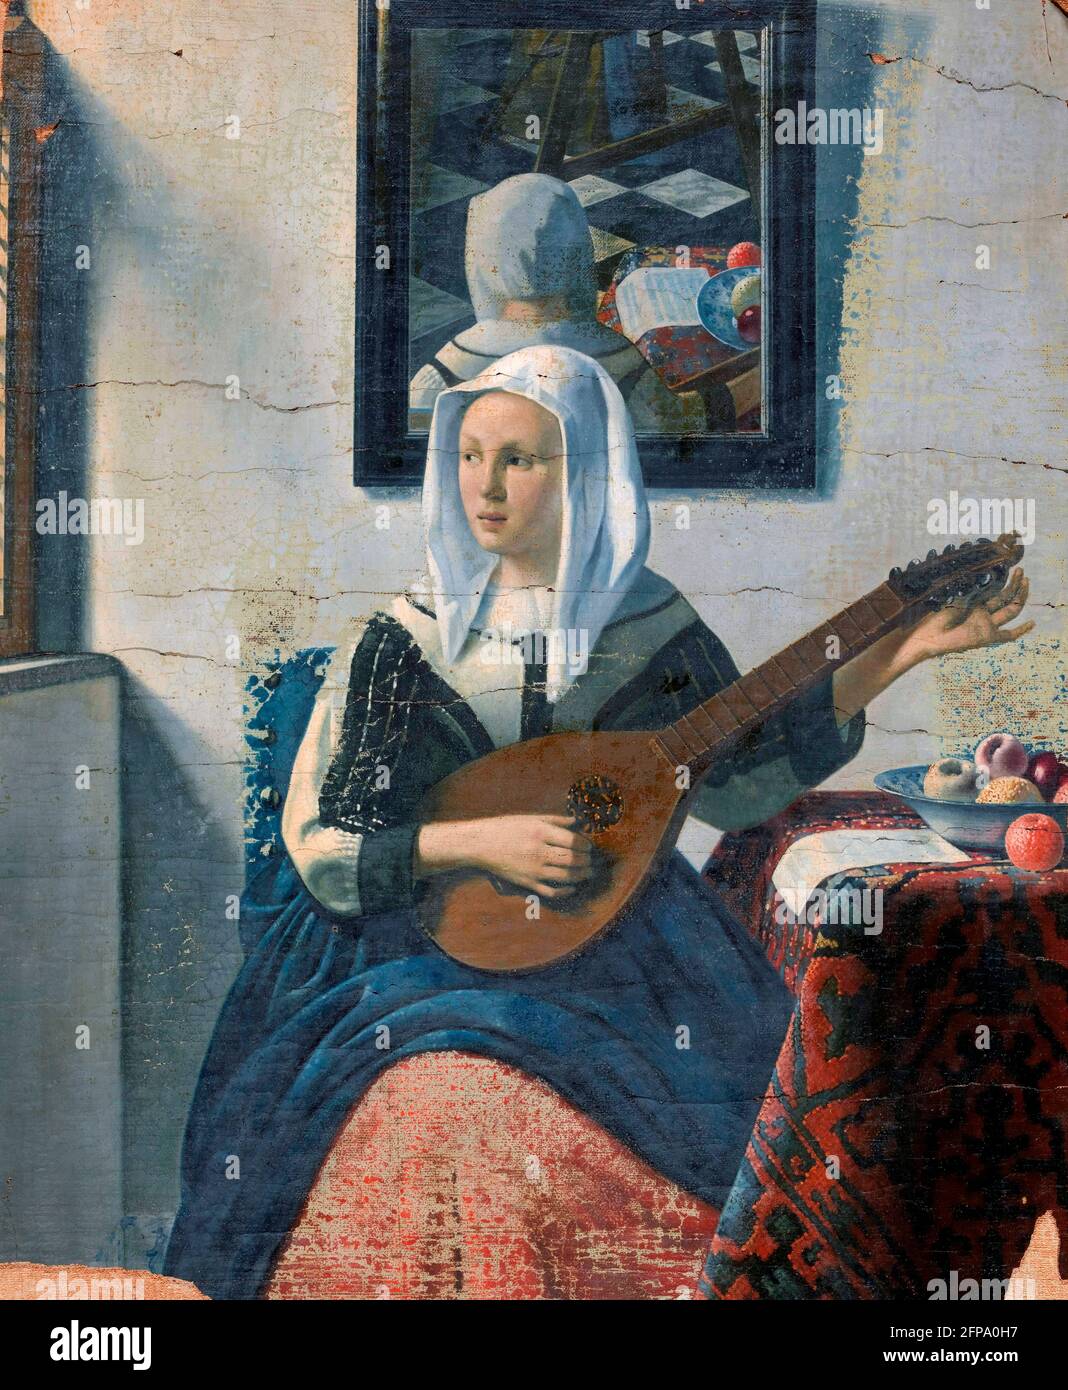 Han van Meegeren. Cisterspelende Vrouw (Donna che gioca una citterna), un dipinto nello stile di Vermeer del famoso pittore olandese Henricus Antonius 'Han' van Meegeren (1889-1947), olio su tela, 1930-1940 Foto Stock